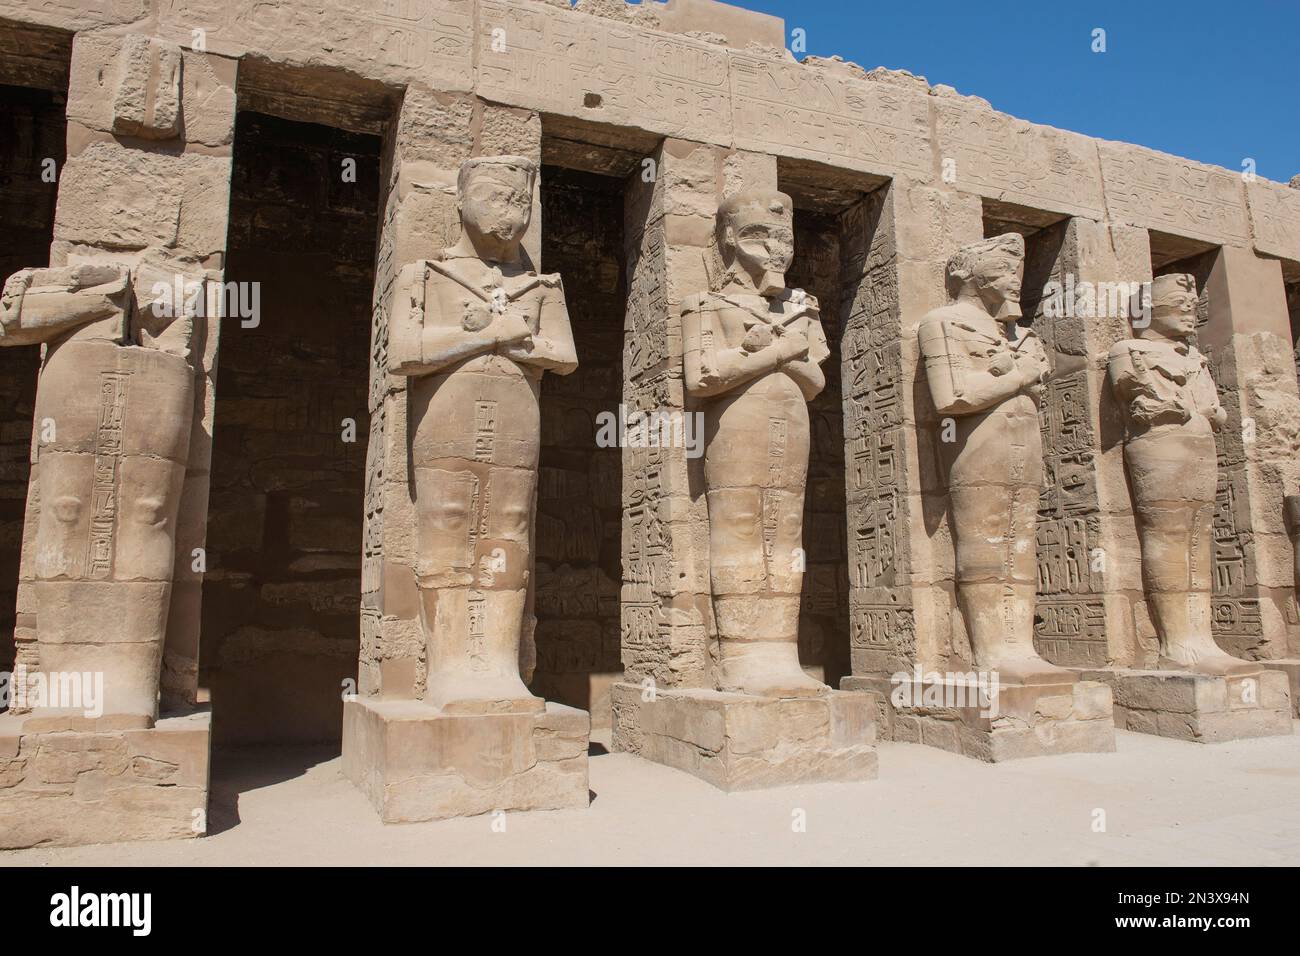 Grandes statues de Ramsès III dans l'ancien temple égyptien de Karnak avec des colonnes dans la cour Banque D'Images